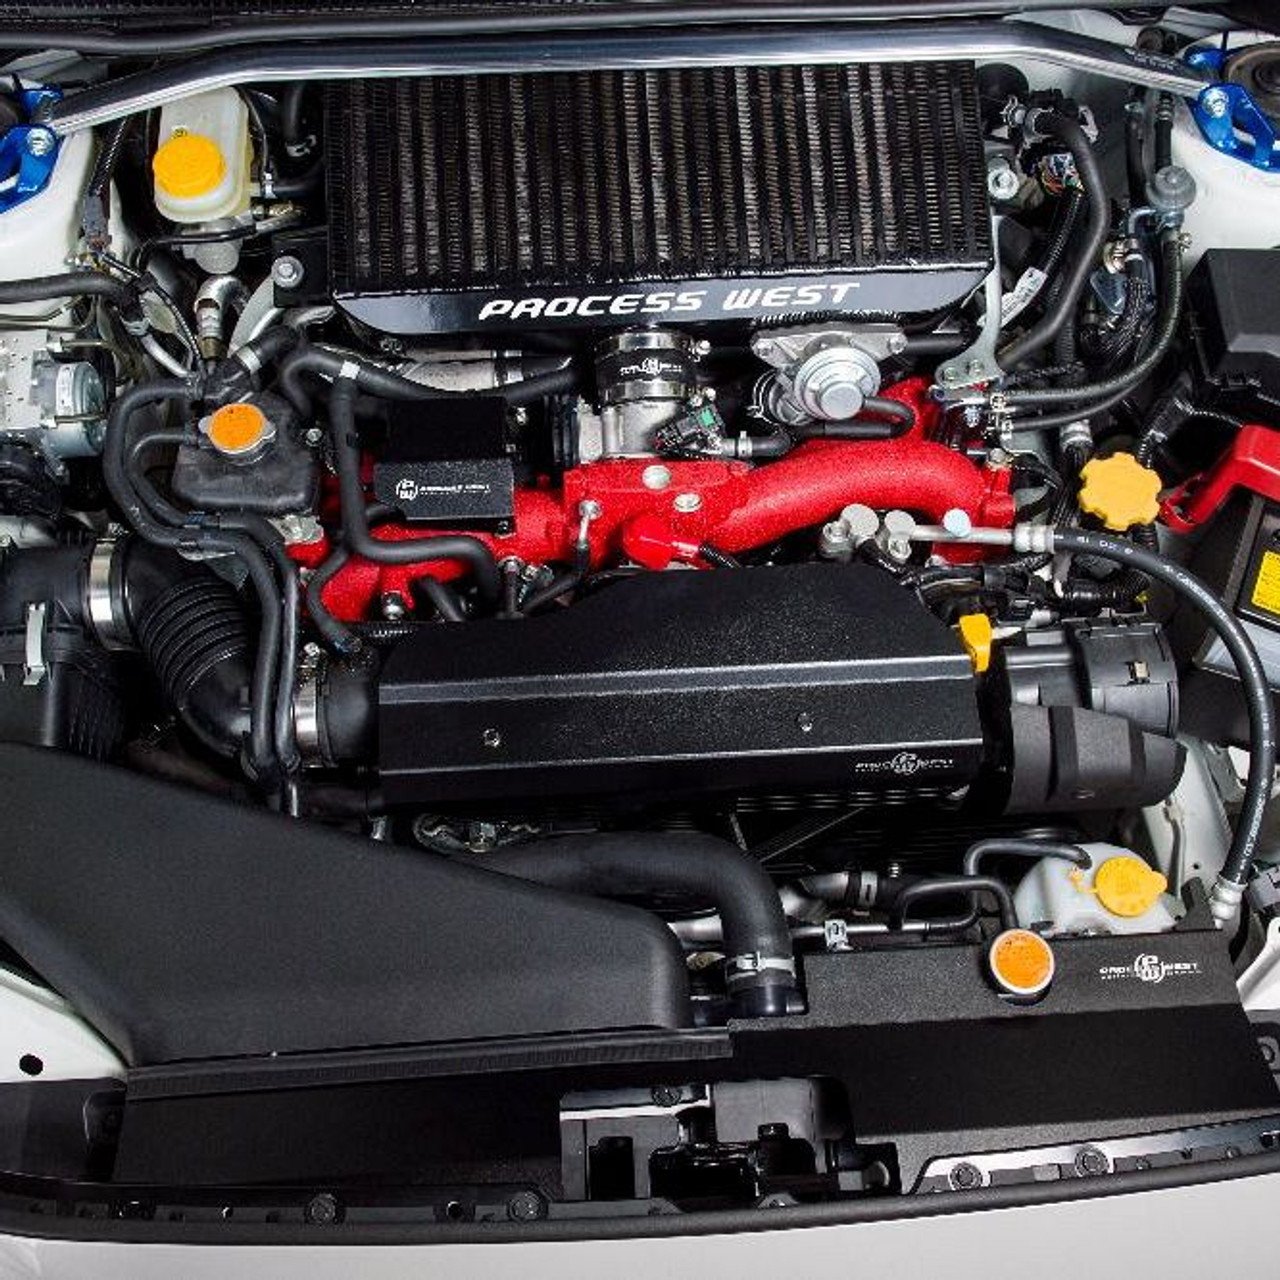 Process West Radiator Cover Black Factory Intake - Subaru WRX/STI 2015+